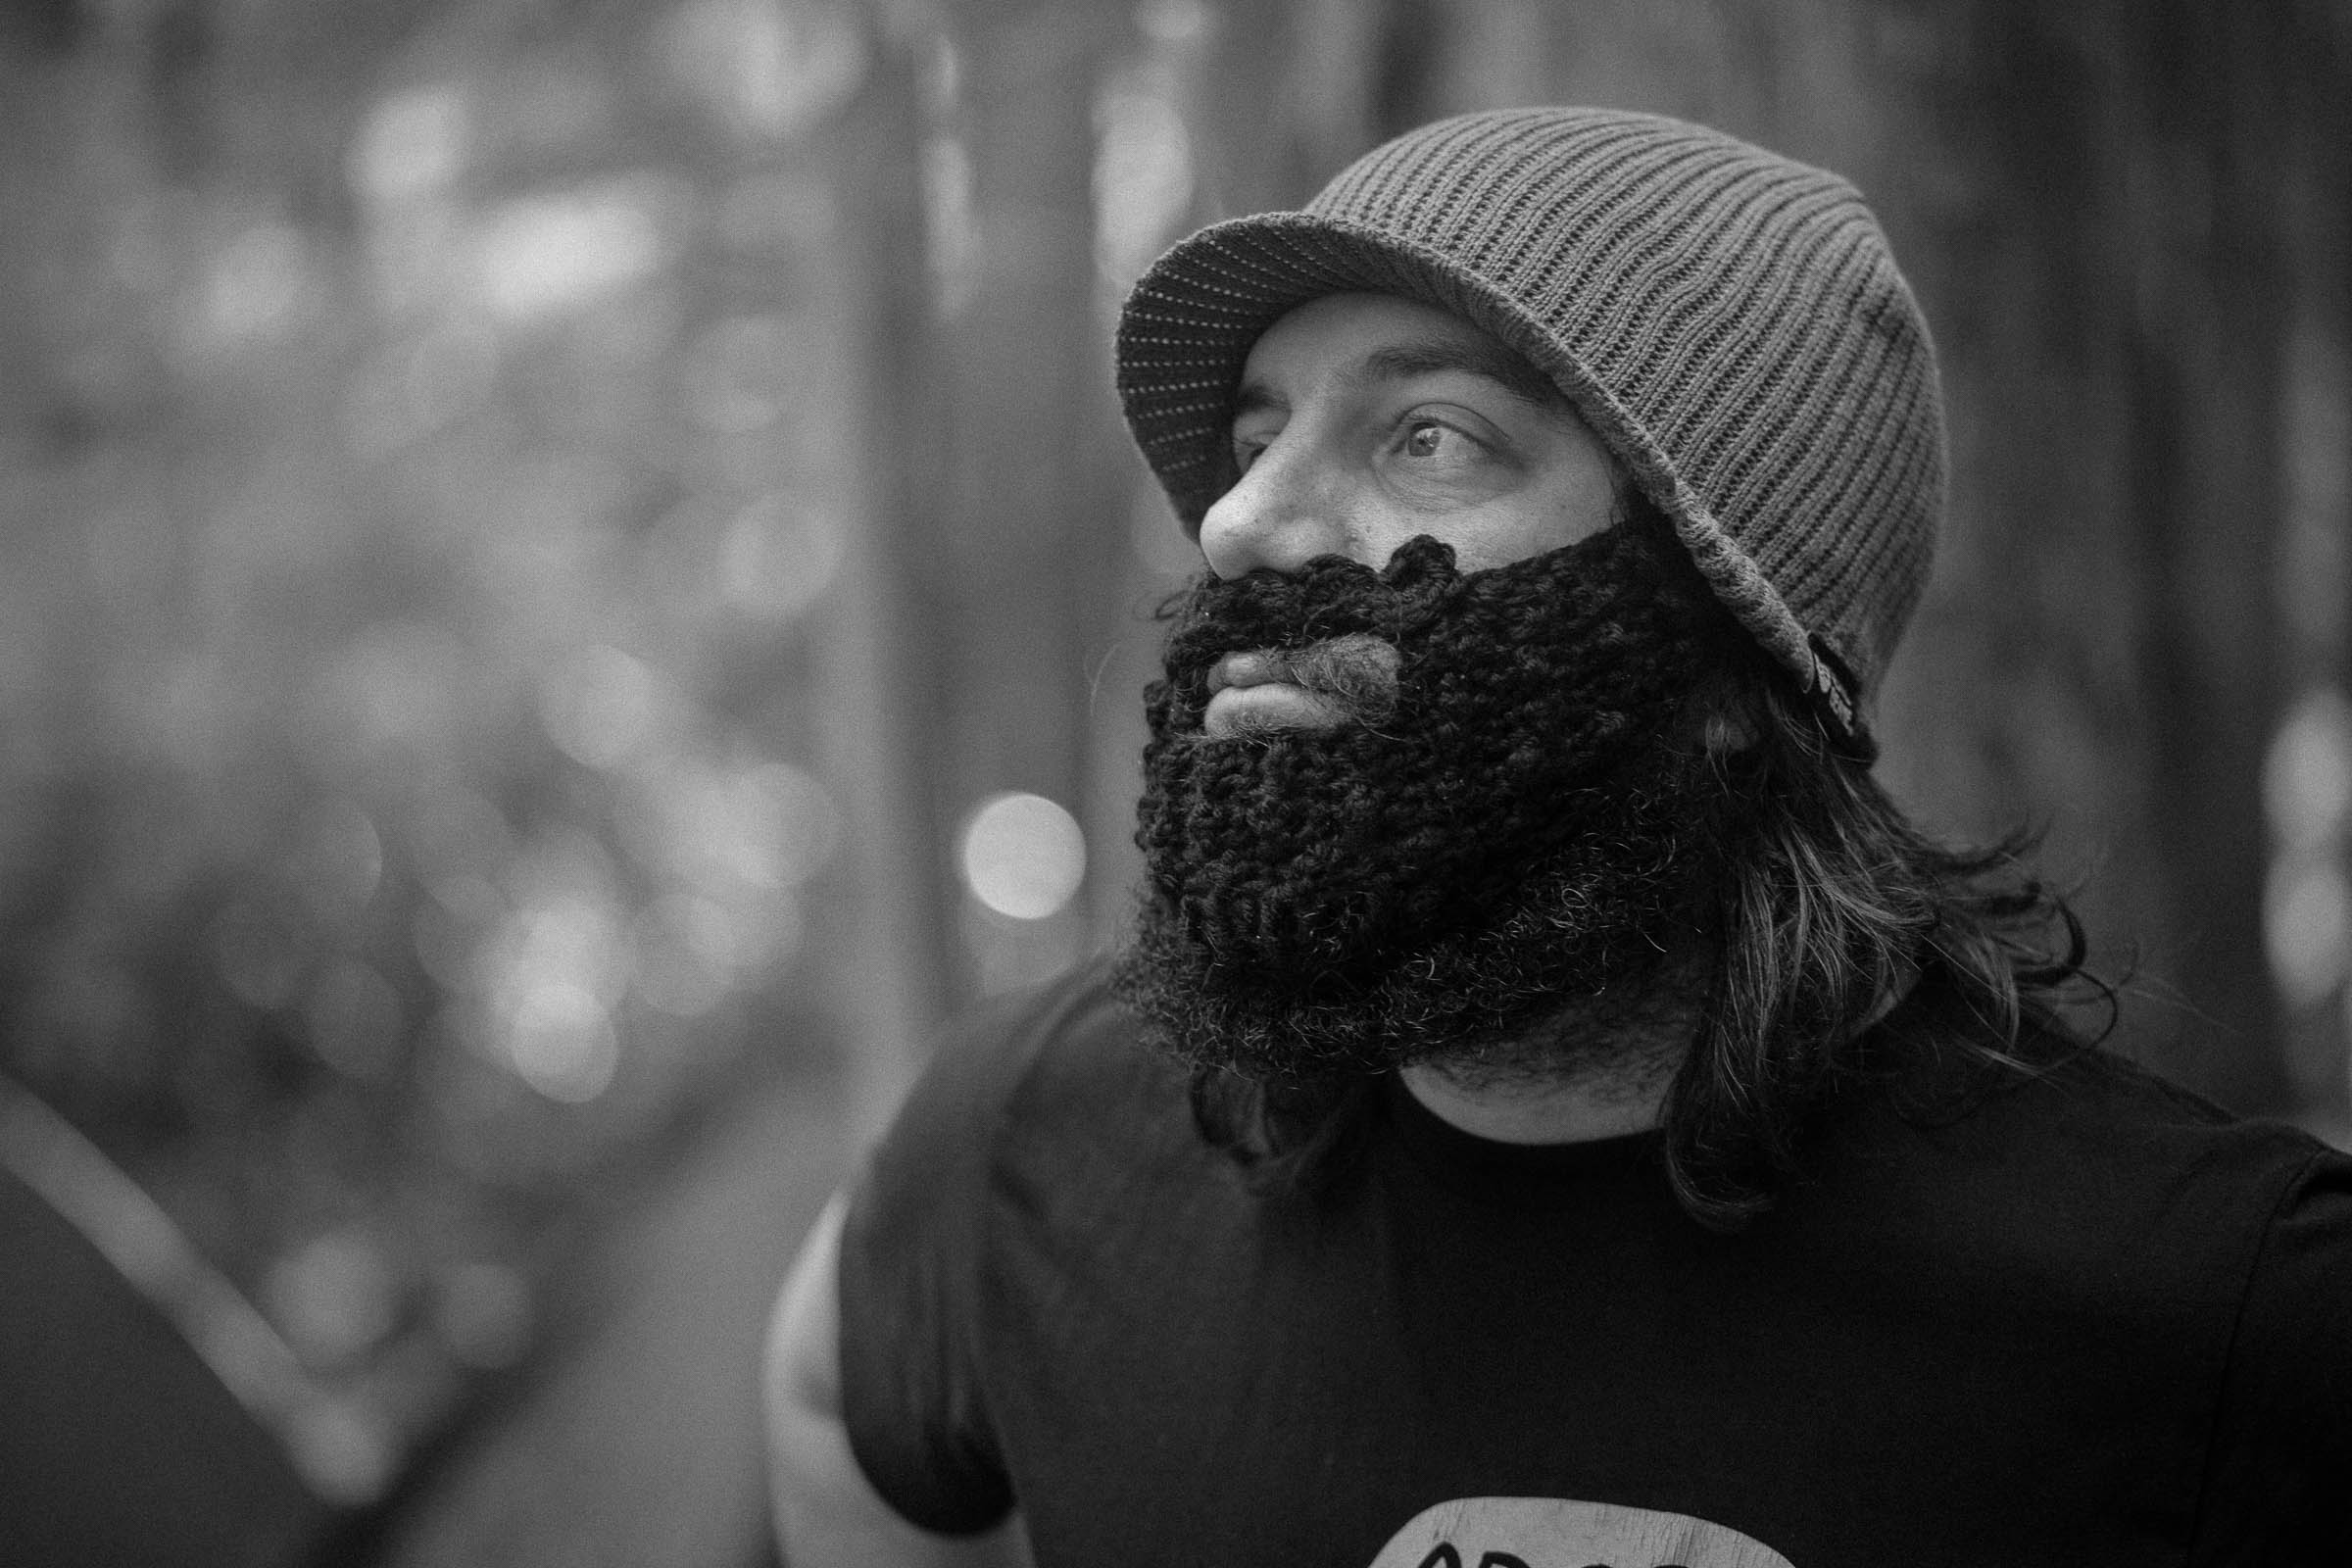 PoW #13: Beard on Beard